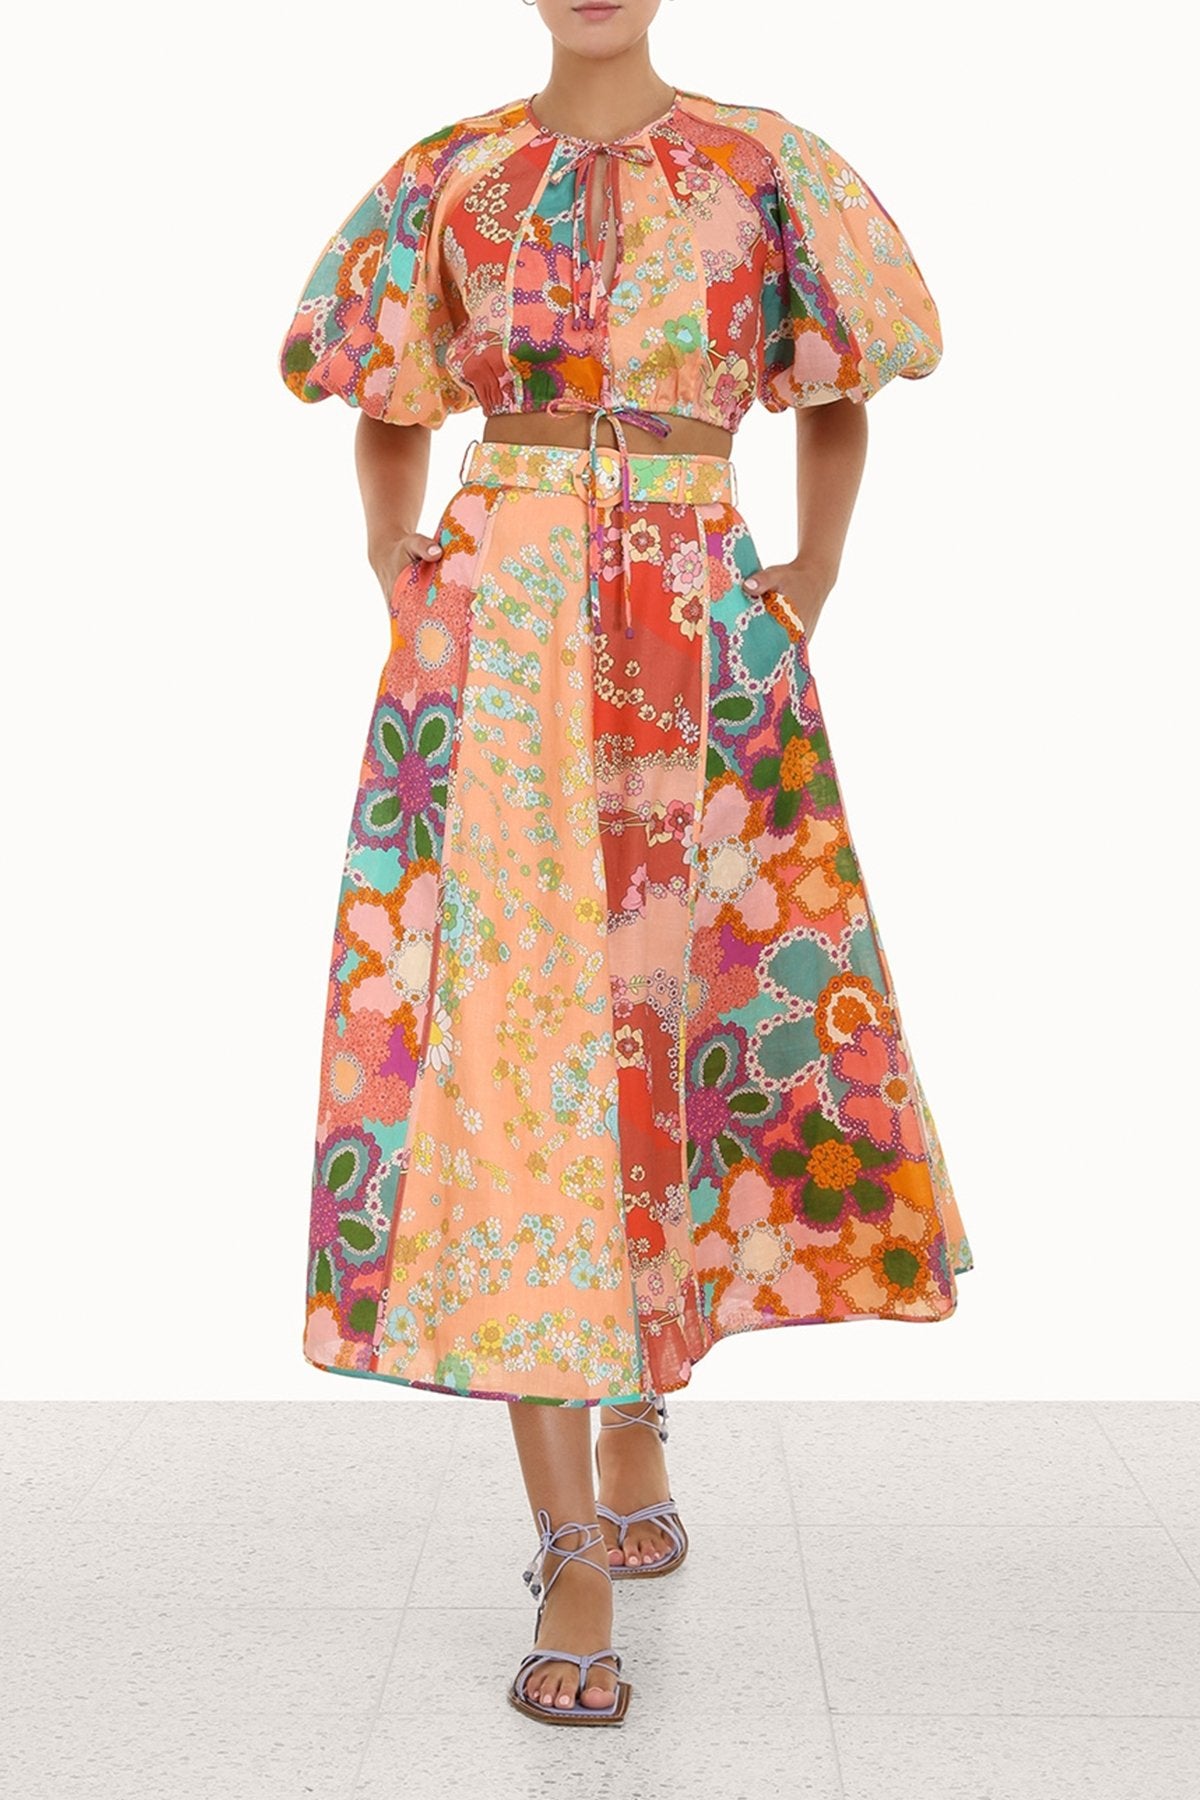 Lola Panelled Skirt in Spliced Floral - shop-olivia.com